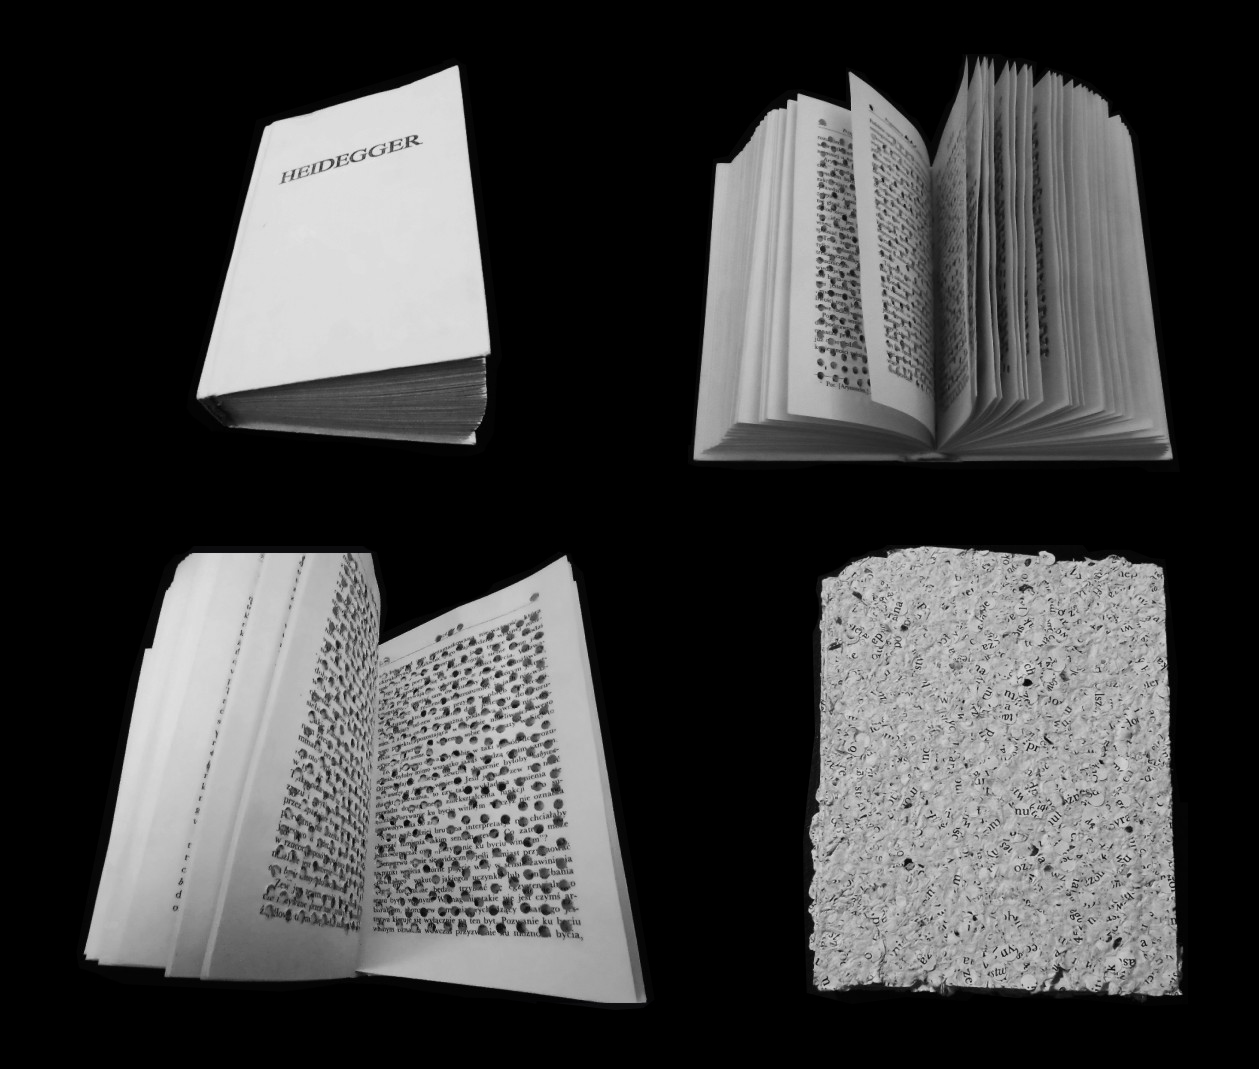 Unikatowa książka artystyczna, zabieg perforacji na stronach książki Martina Heideggera pt. „Bycie i czas”, papier czerpany uzyskany z fragmentów ścinków papieru pozostałych po procesie perforacji   